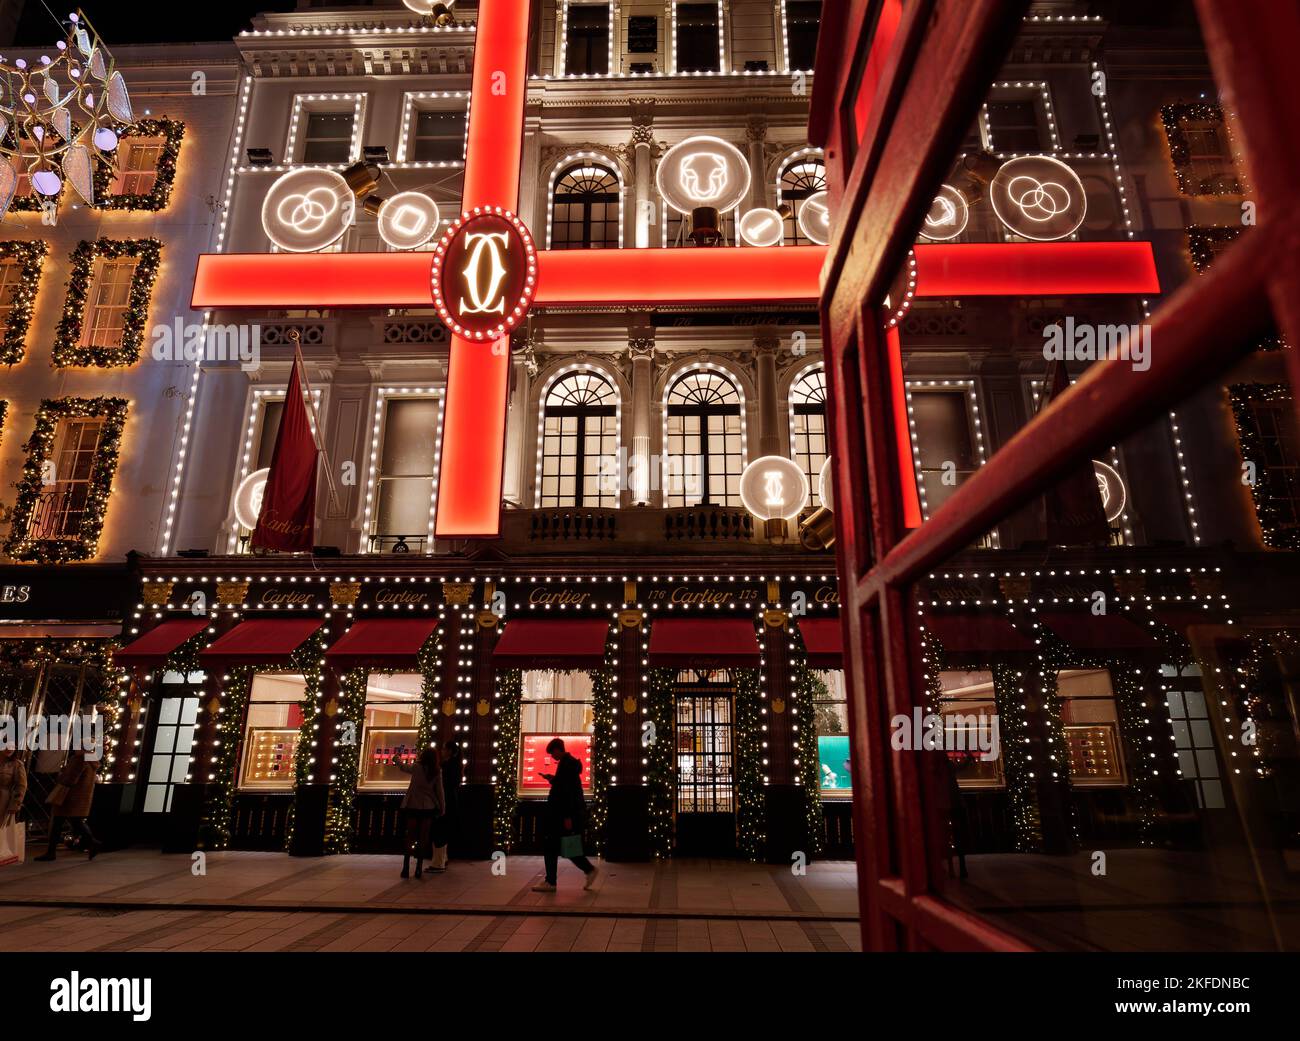 Weihnachtlich beleuchtetes Display mit Band-Effekt im Cartier Jewellers with Red Phone Box, New Bond Street, London. Stockfoto